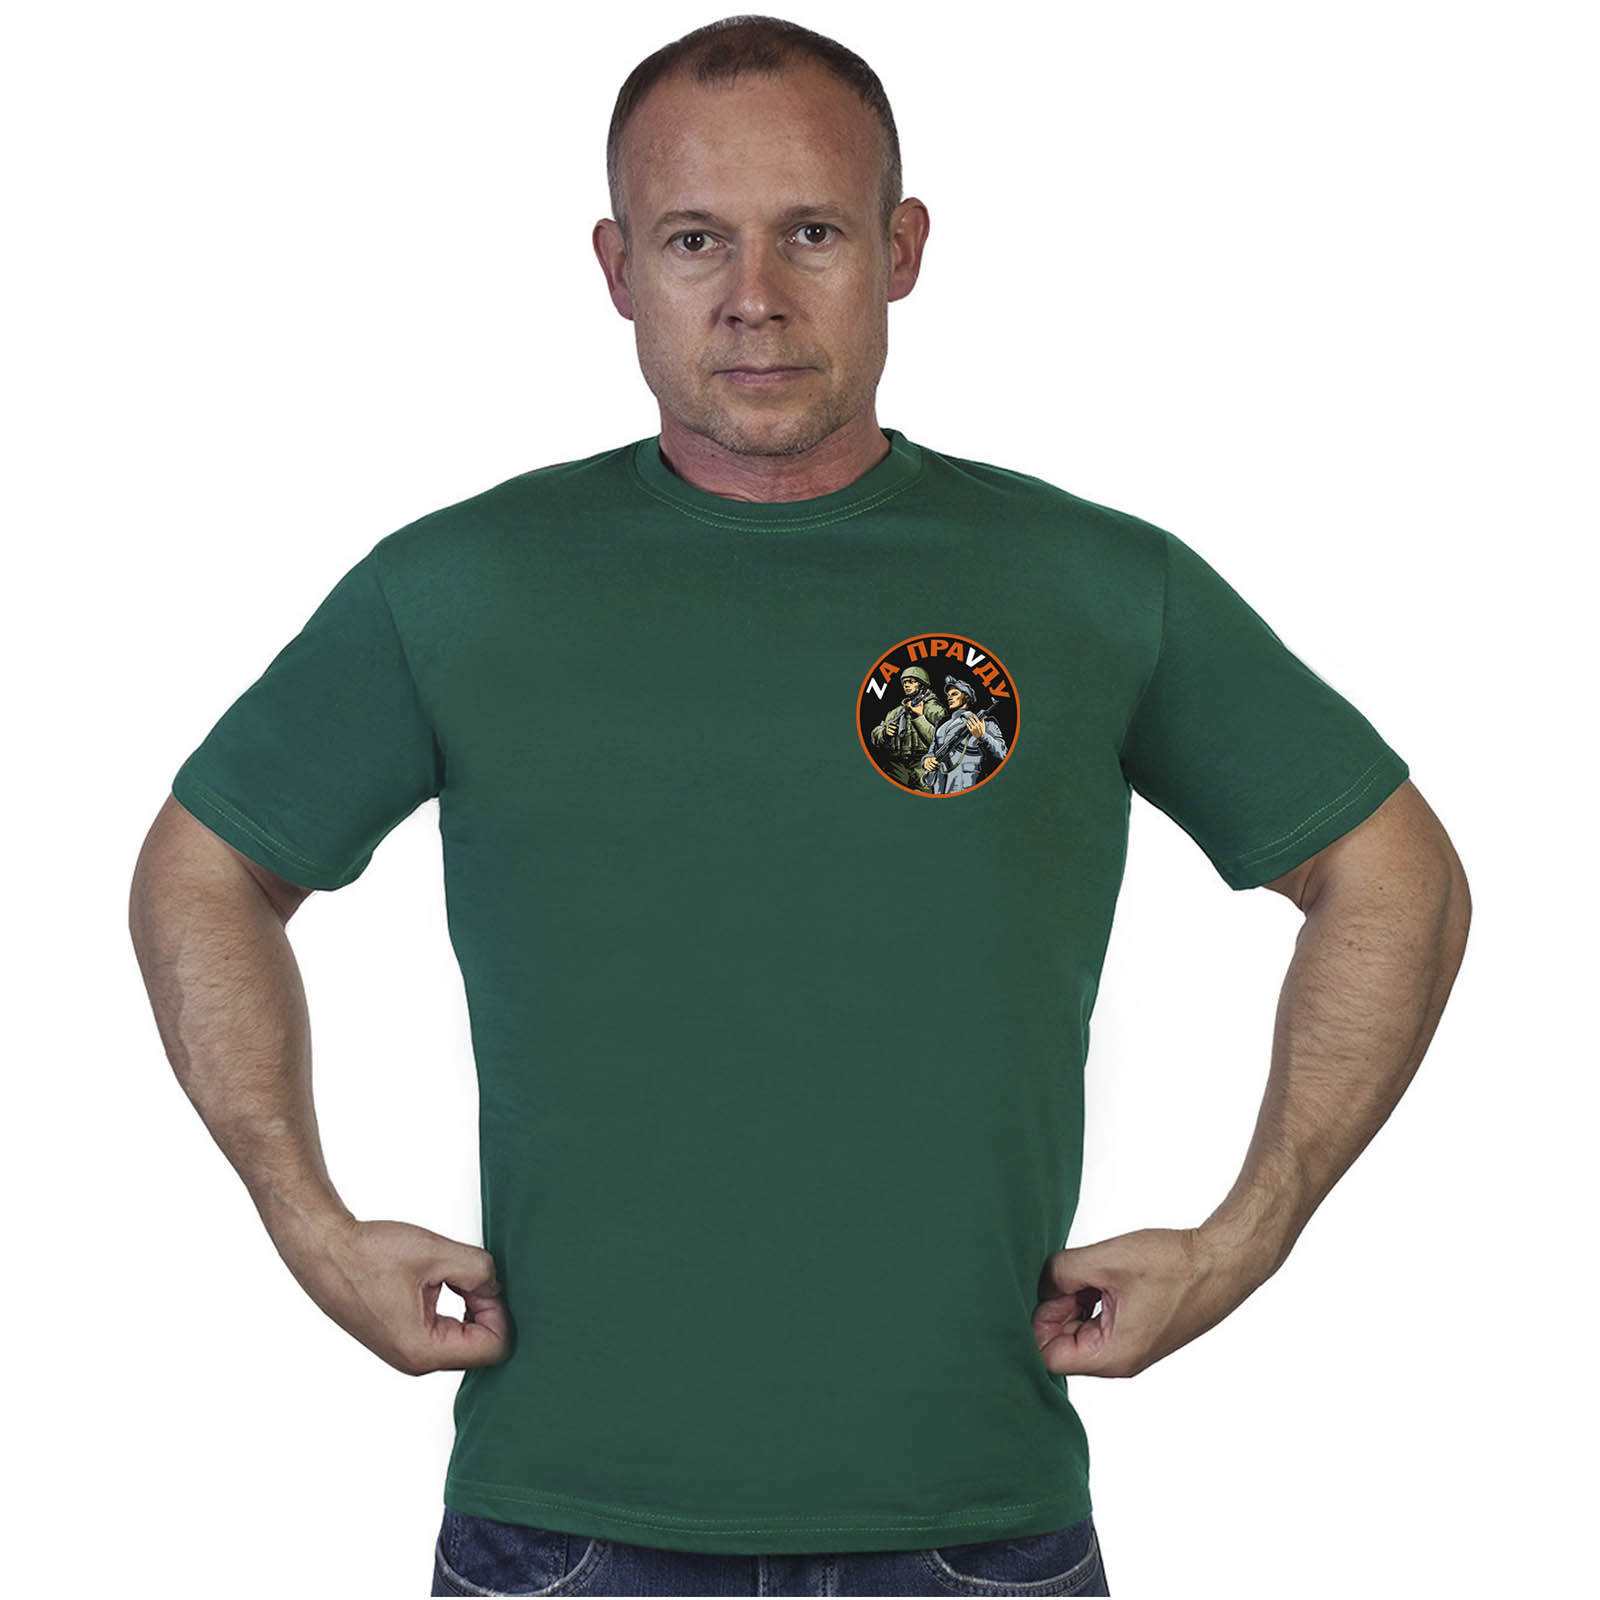 Зелёная футболка с трансфером "Zа праVду"